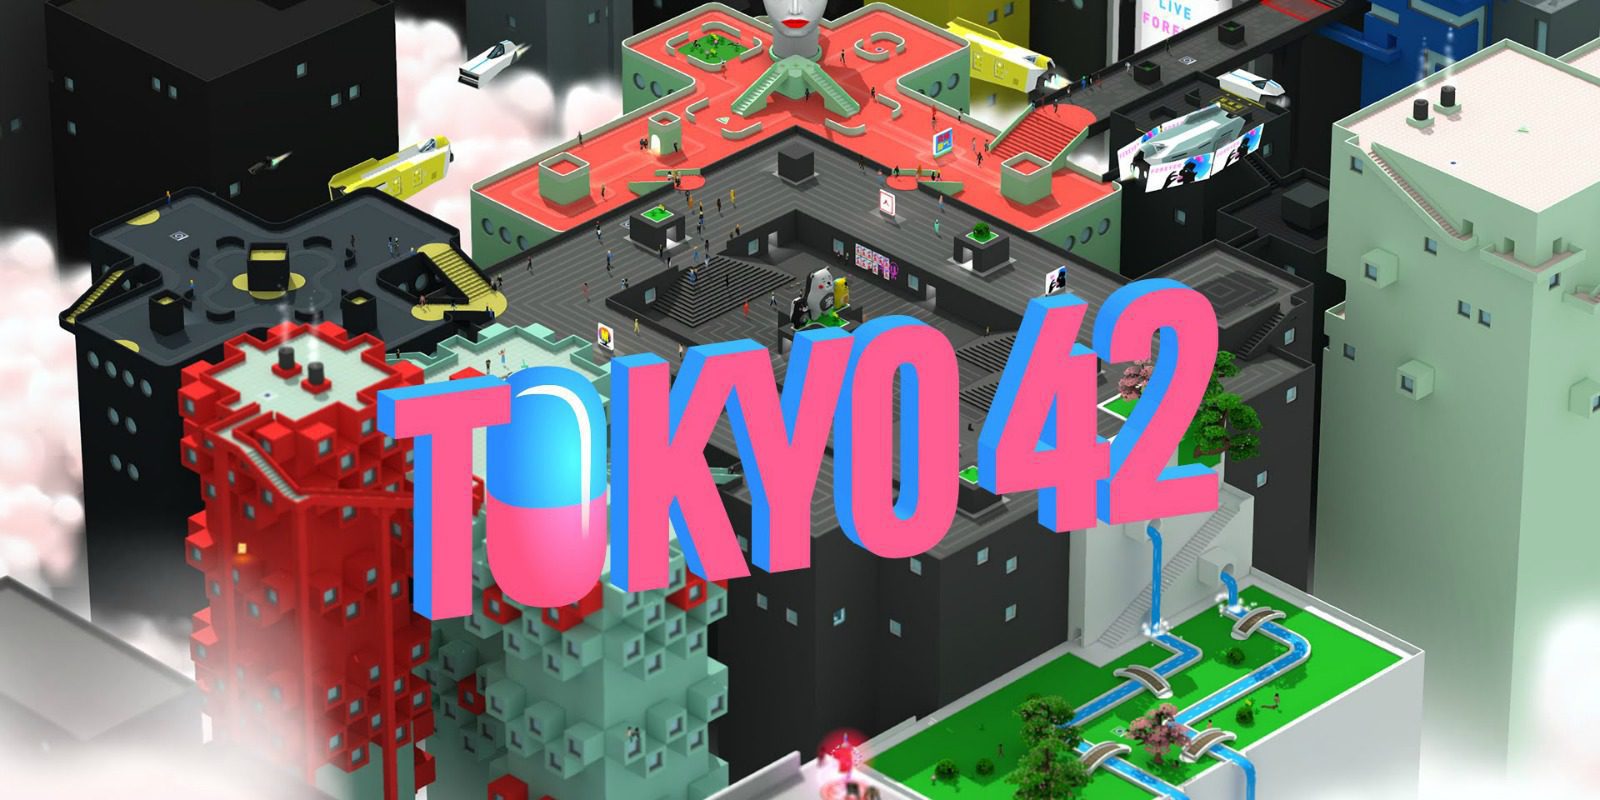 Así son los enfrentamientos en 'Tokyo 42'